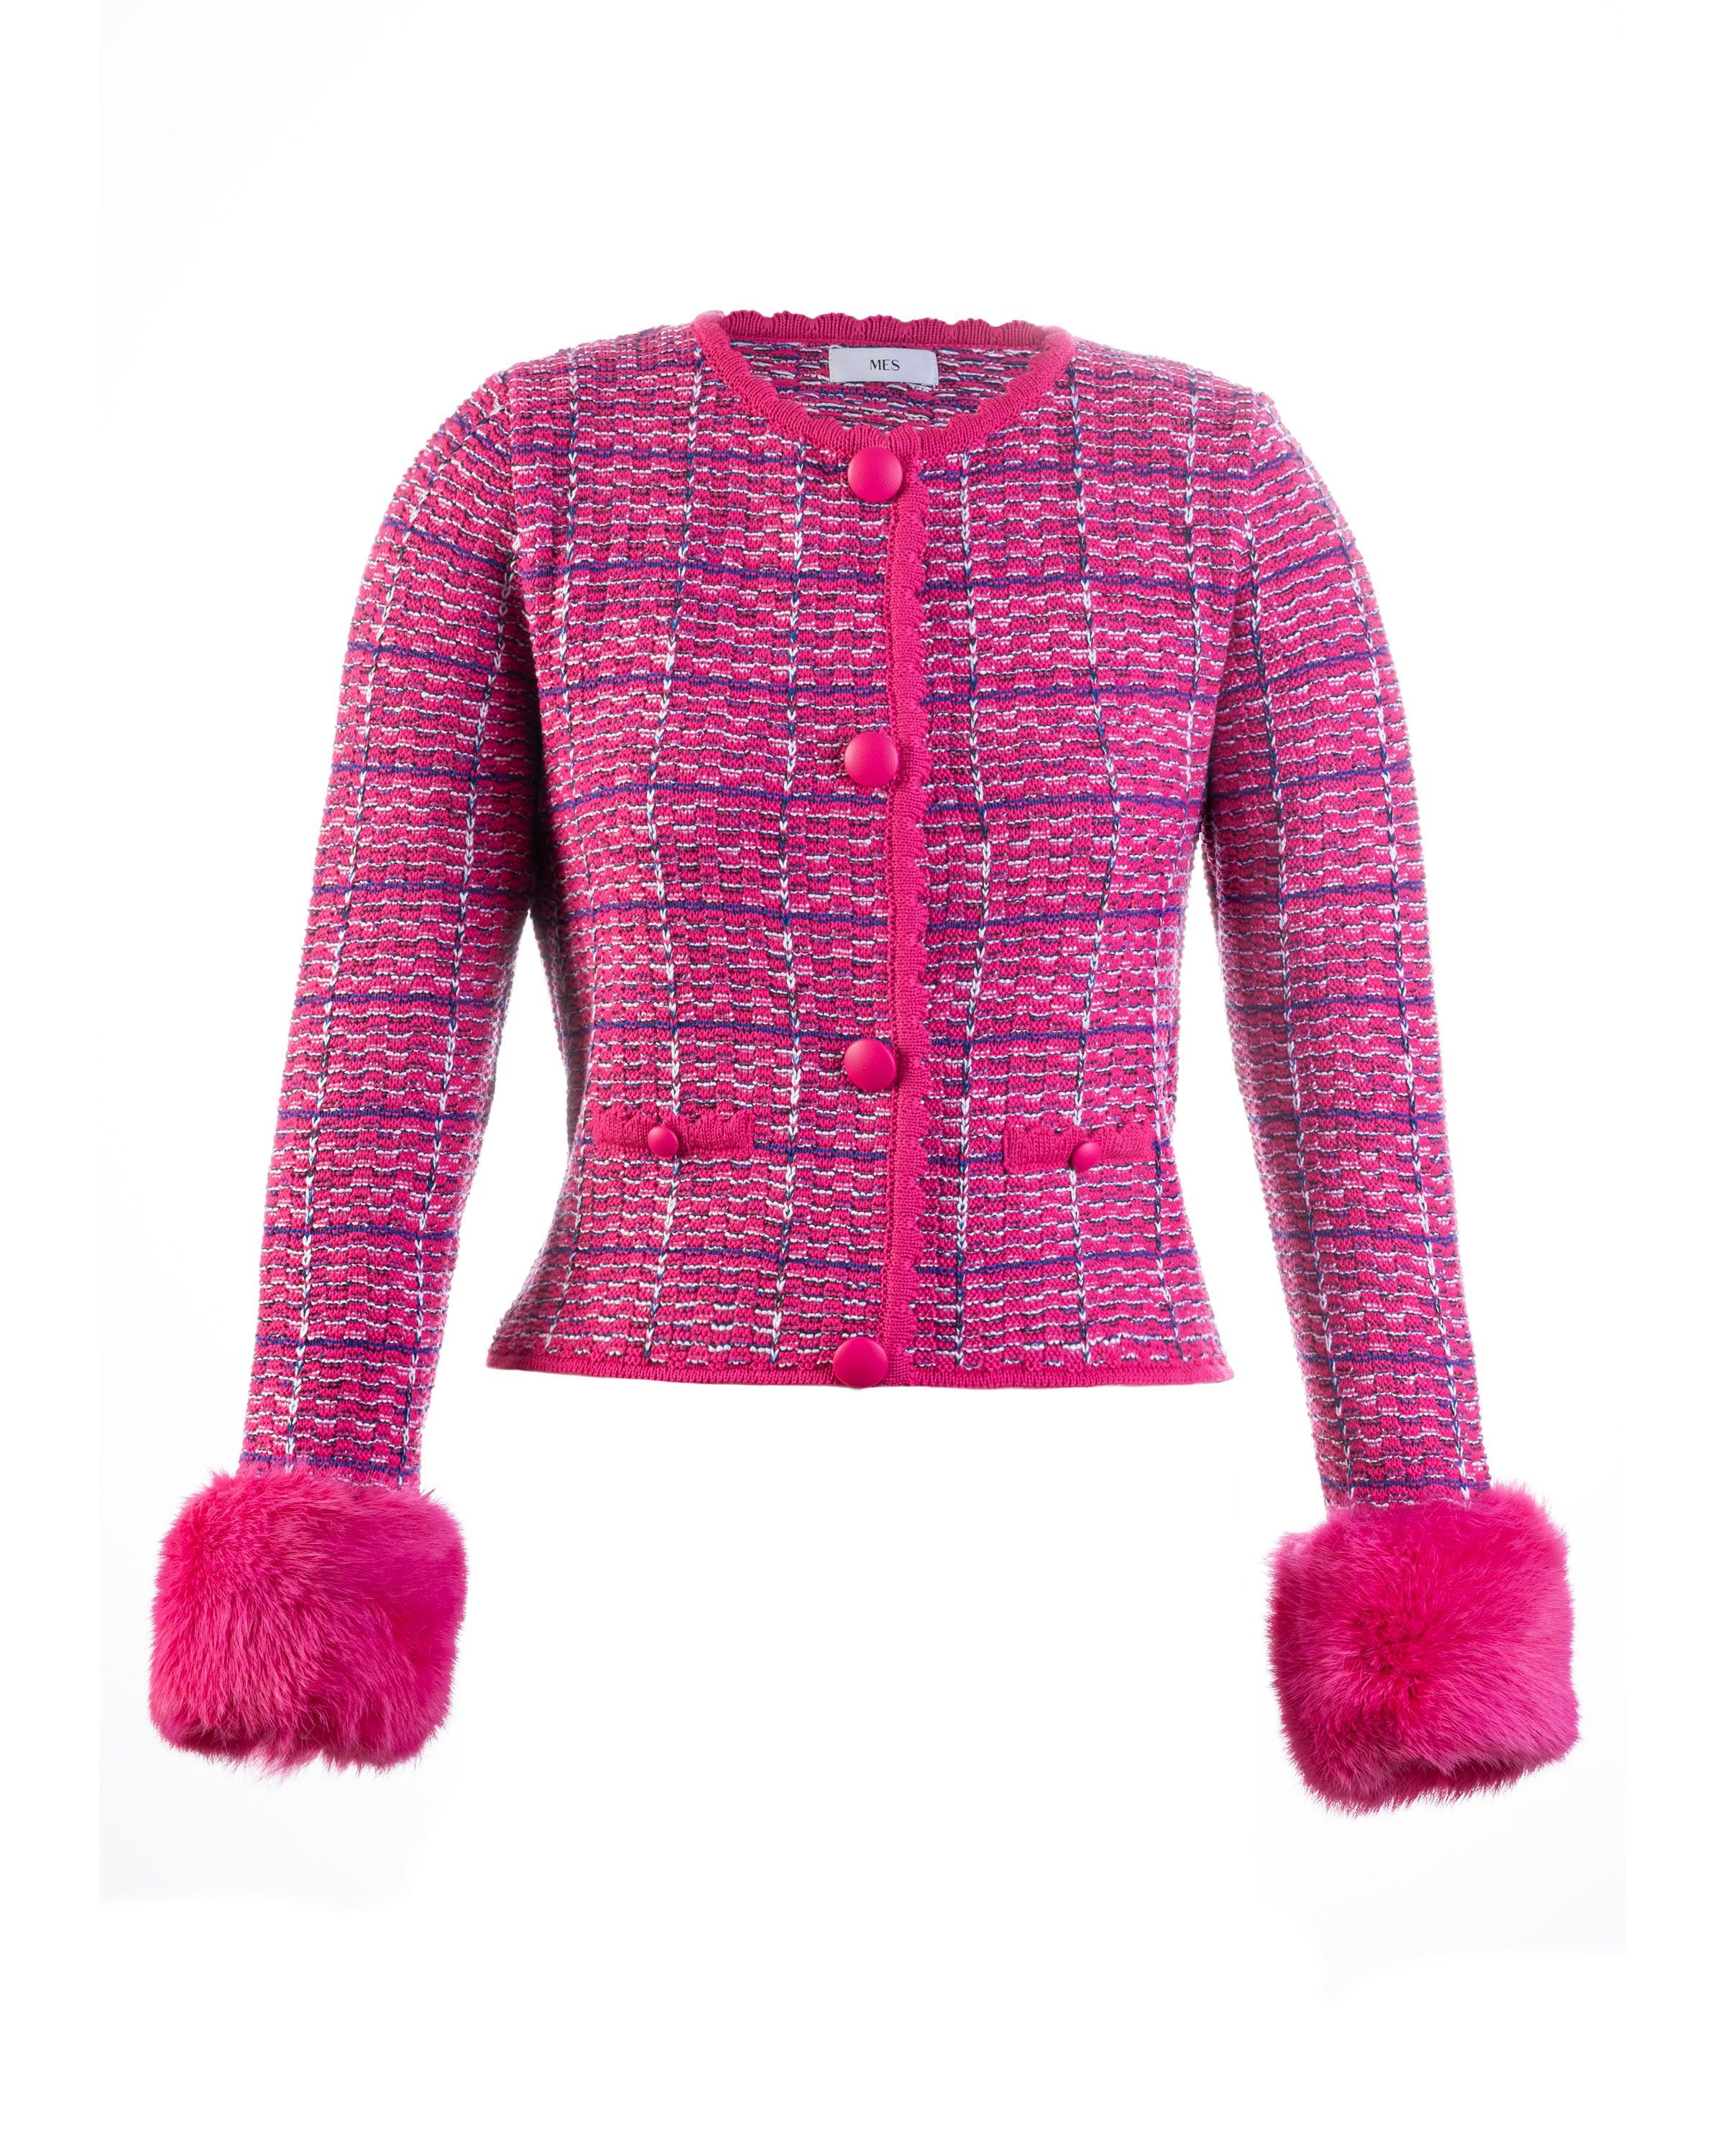 Cardigan tricot tweed pink - MES